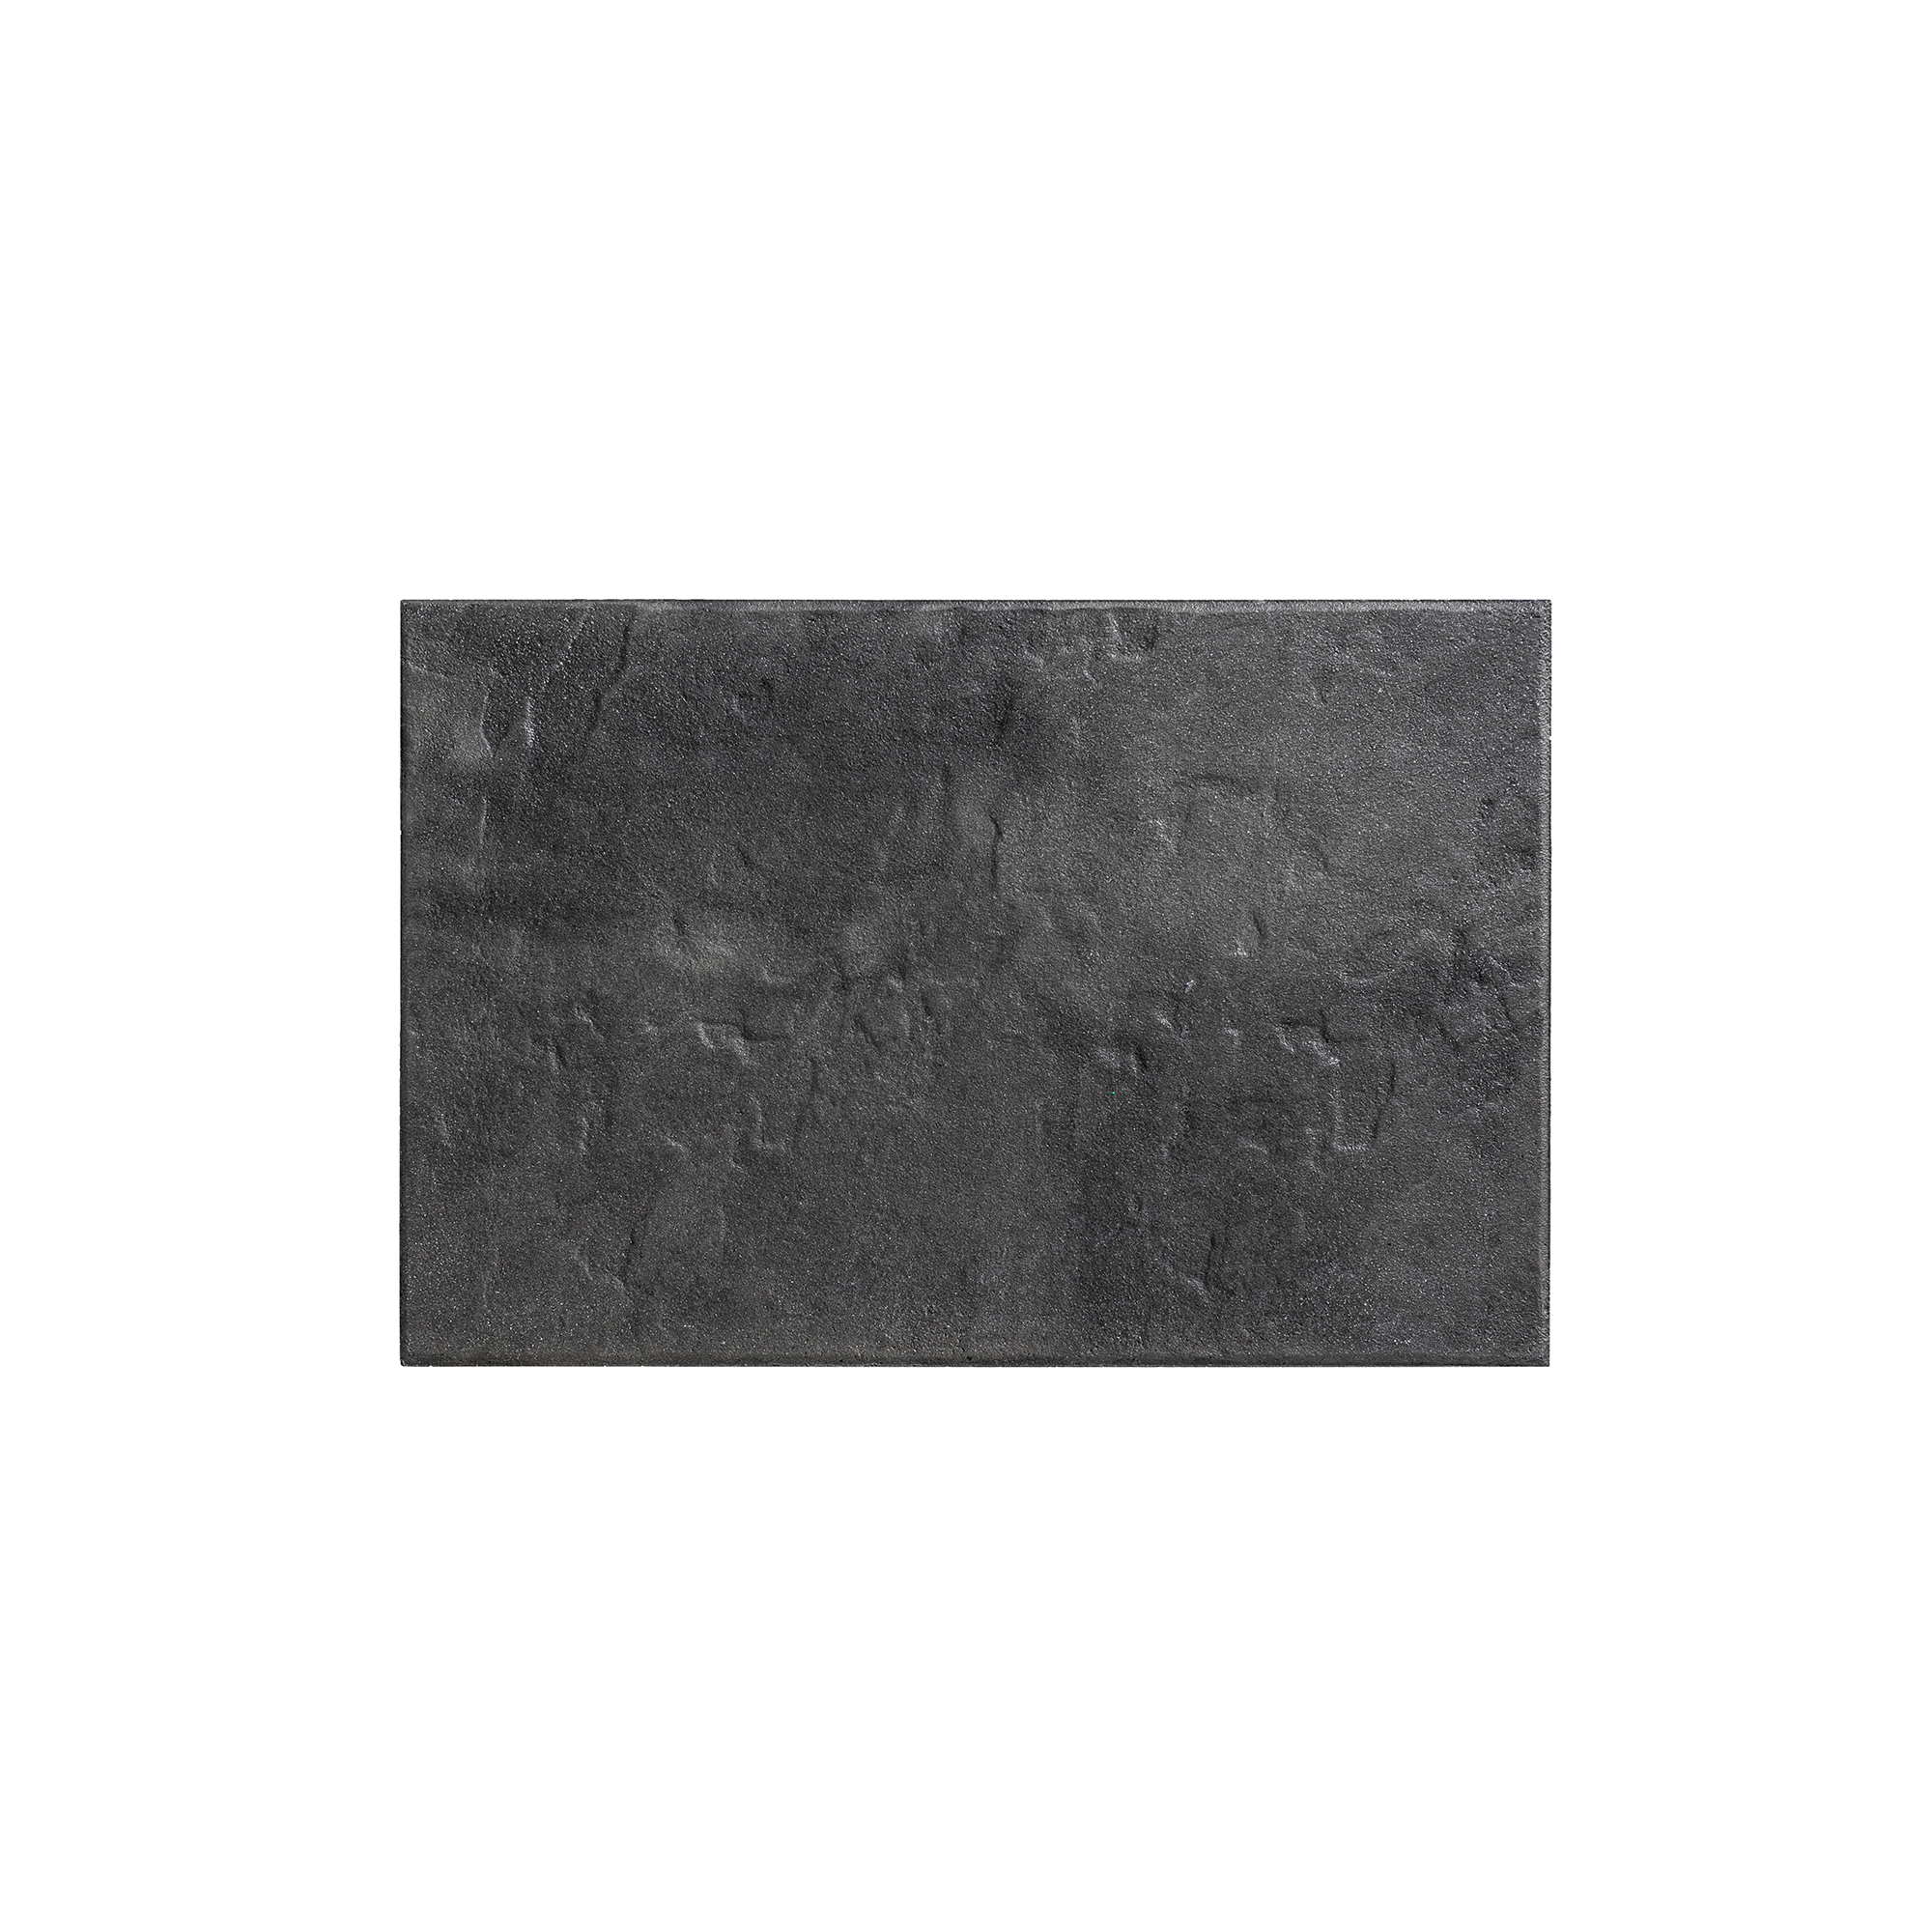 Terrassenplatte 'T-Court Grit ' Beton anthrazit 60 x 40 x 4 cm + product picture